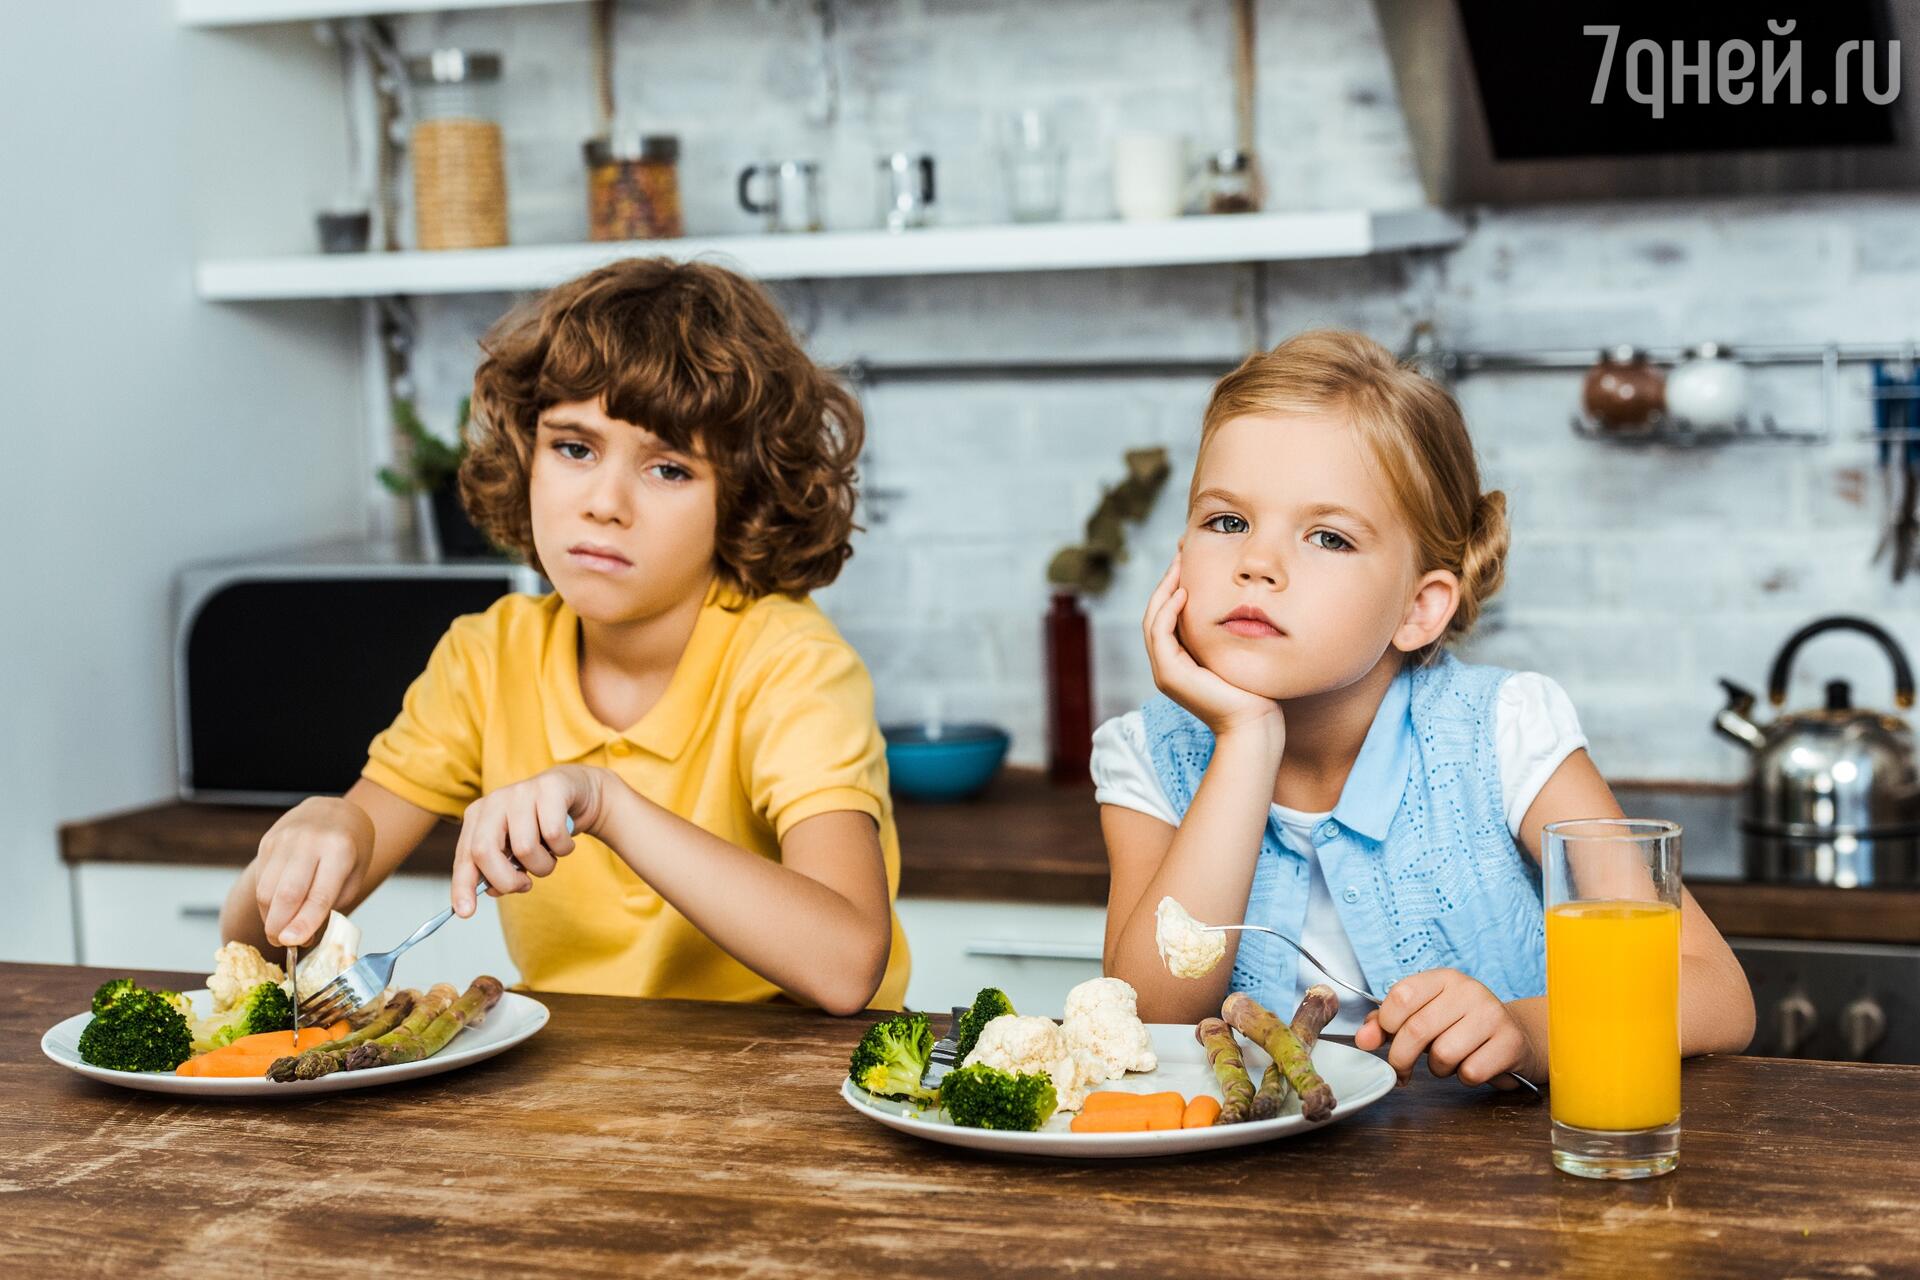 Плохой аппетит у ребёнка, нужно ли беспокоиться и что делать